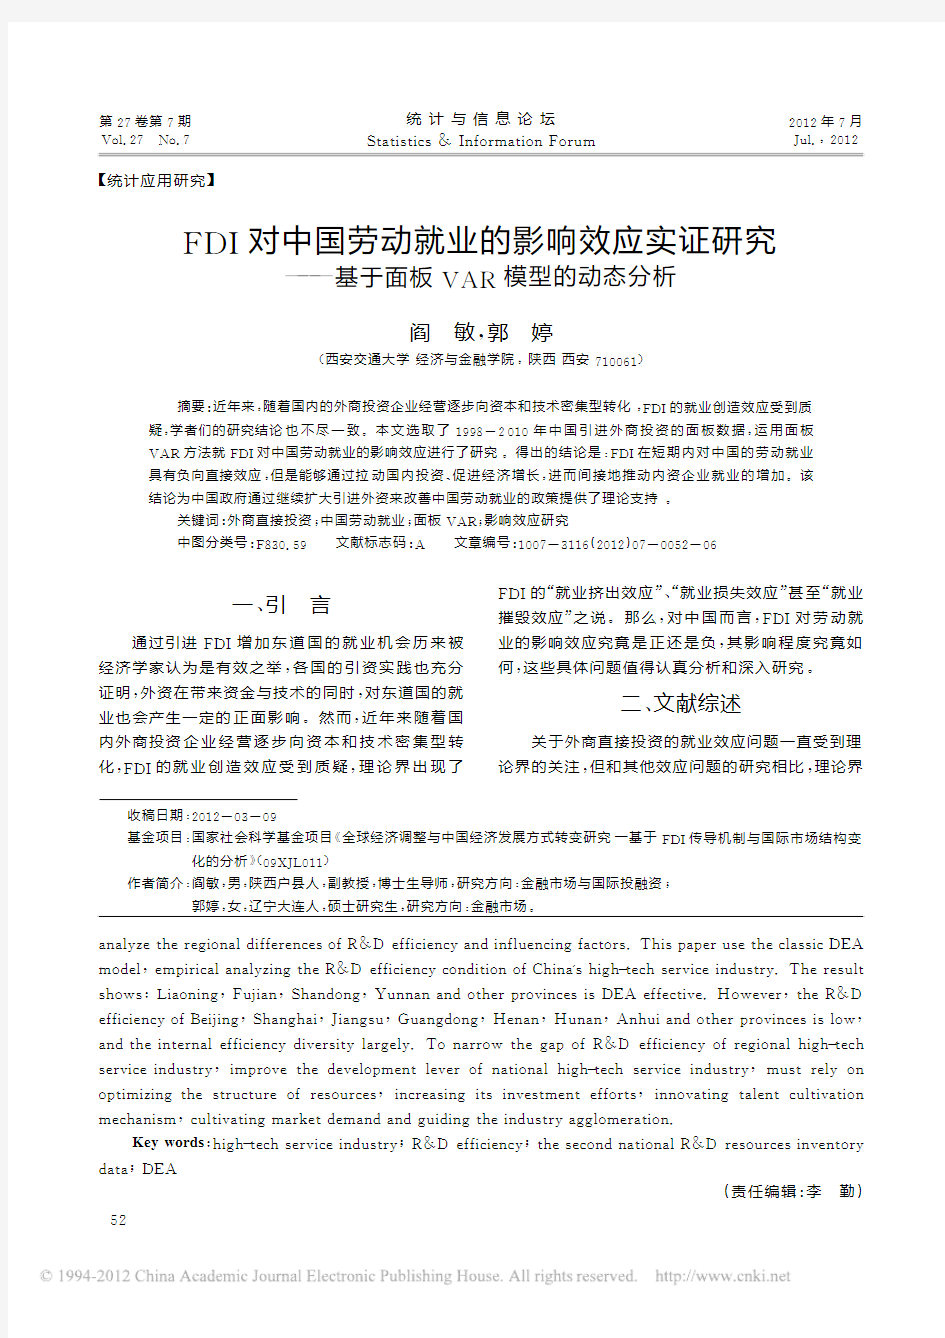 FDI对中国劳动就业的影响效应实_省略_究_基于面板VAR模型的动态分析_阎敏